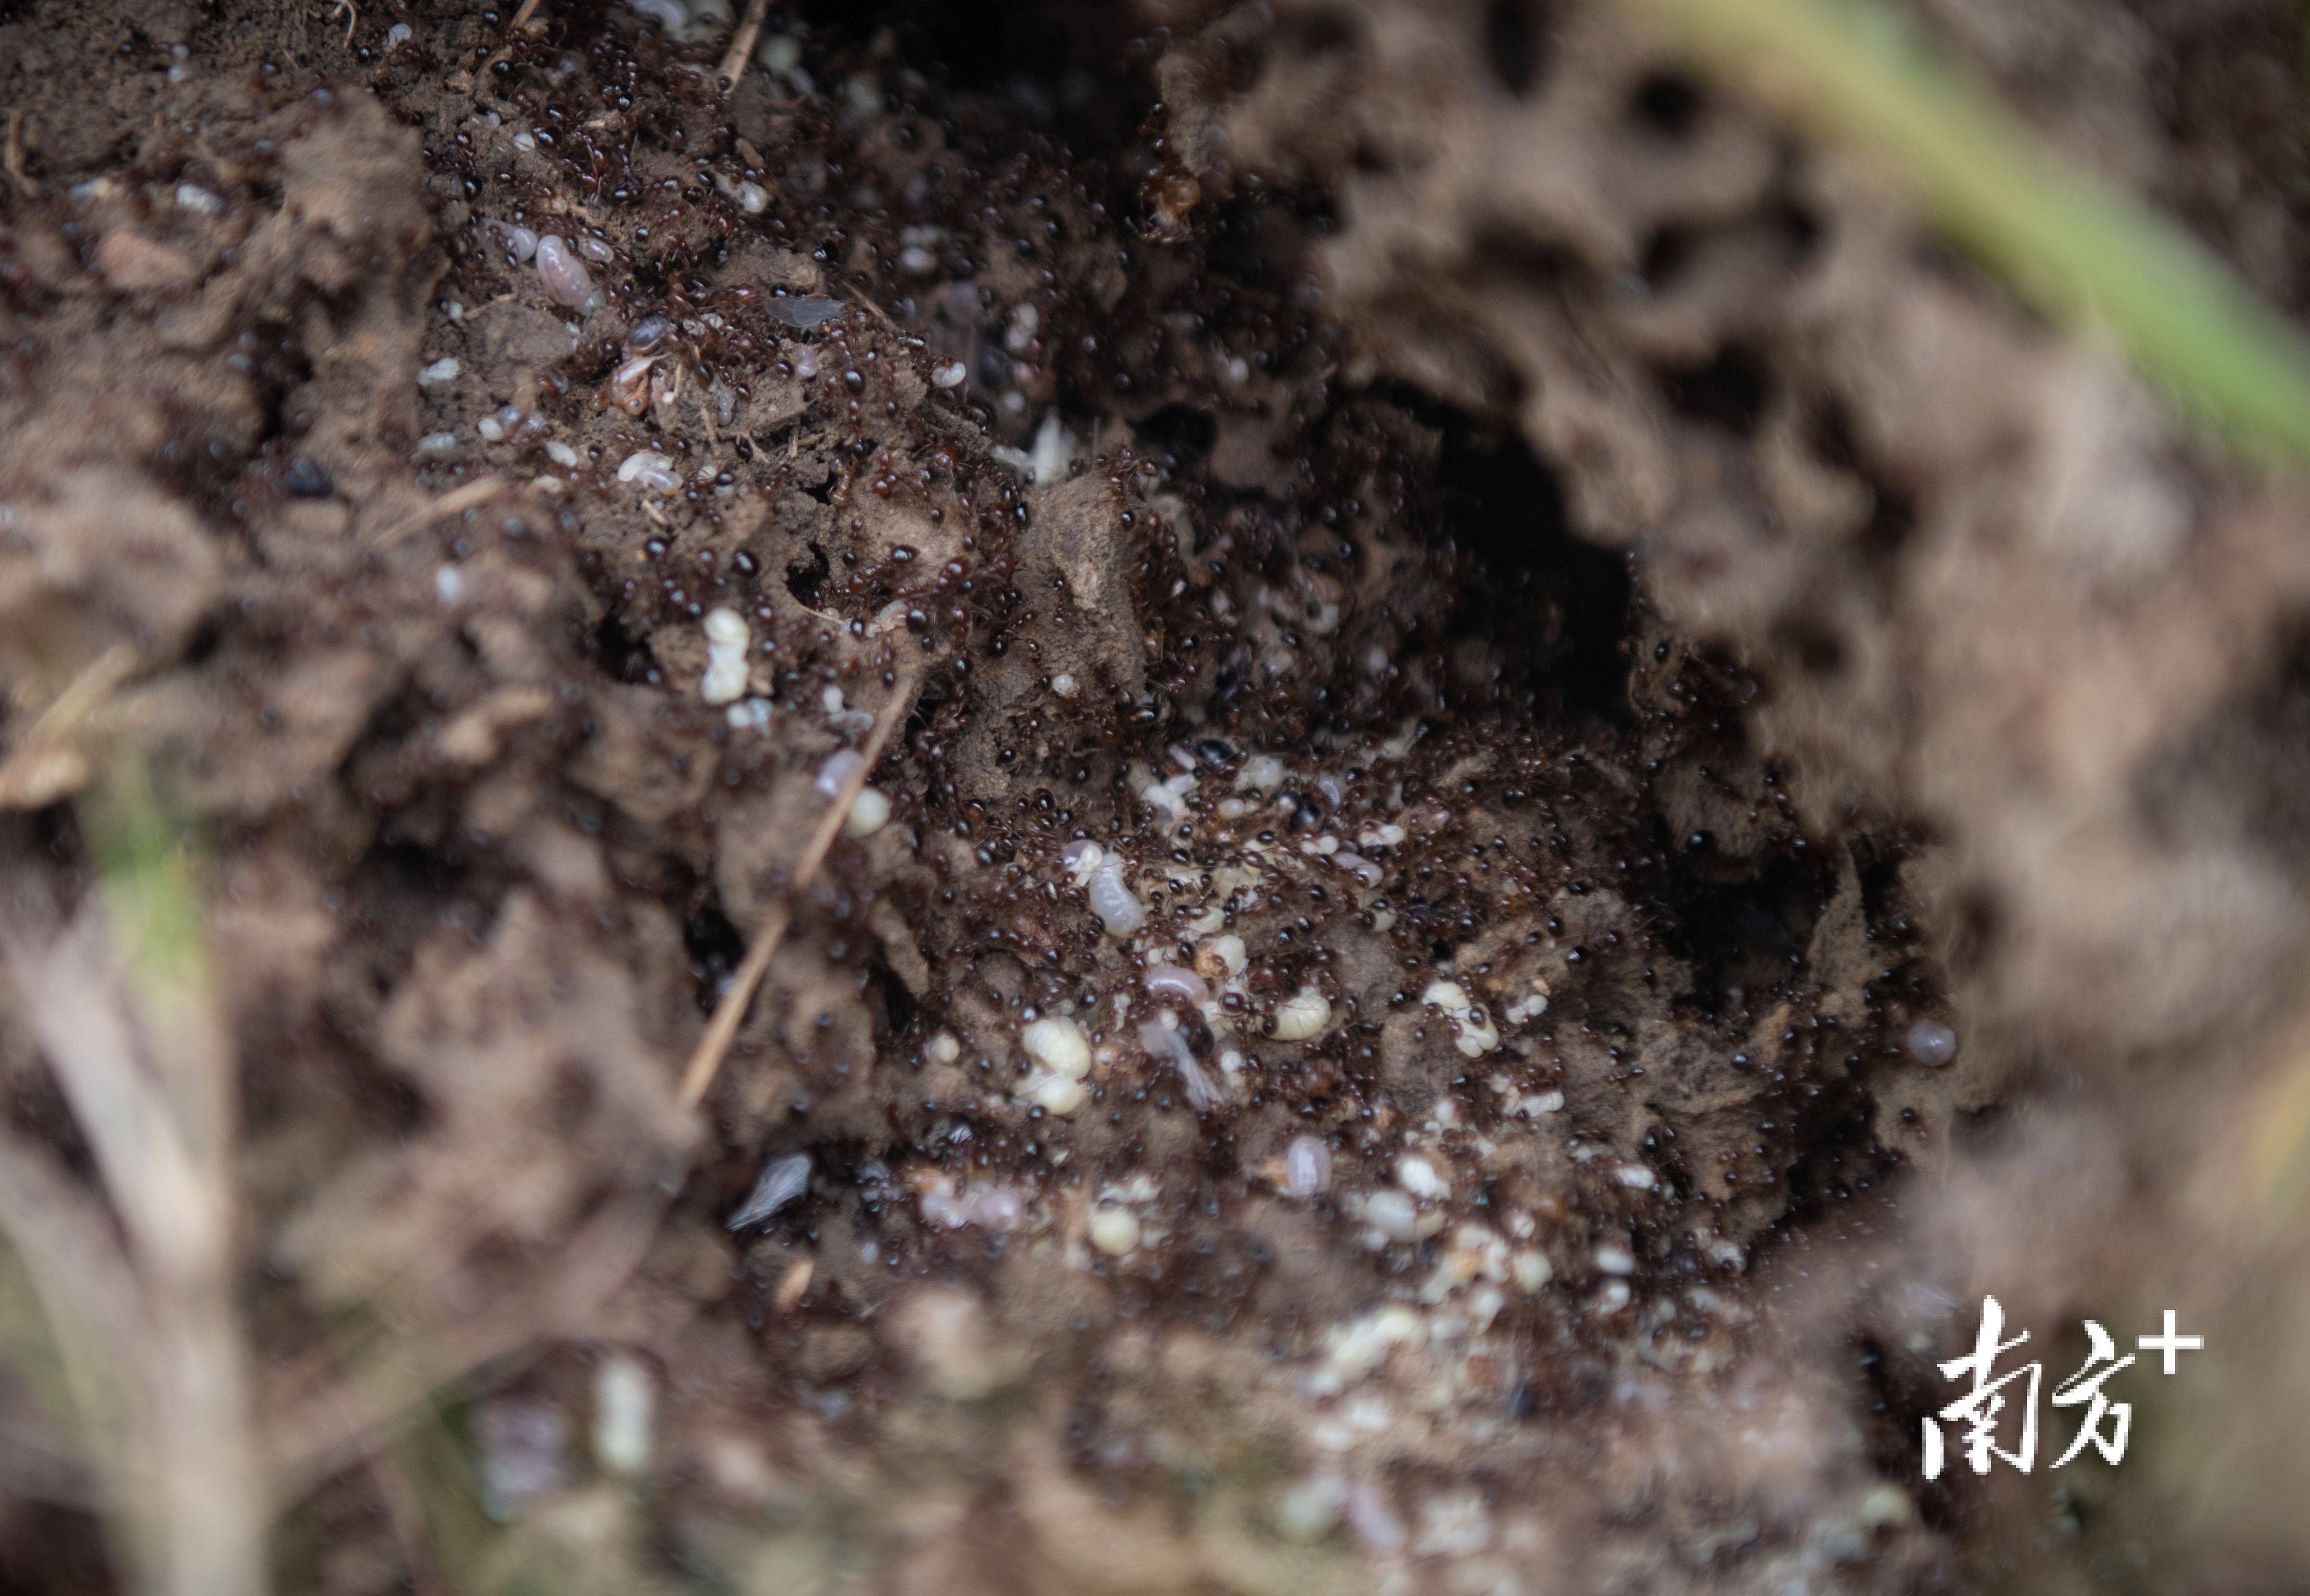 成熟的蚁巢有5-50万只红火蚁。